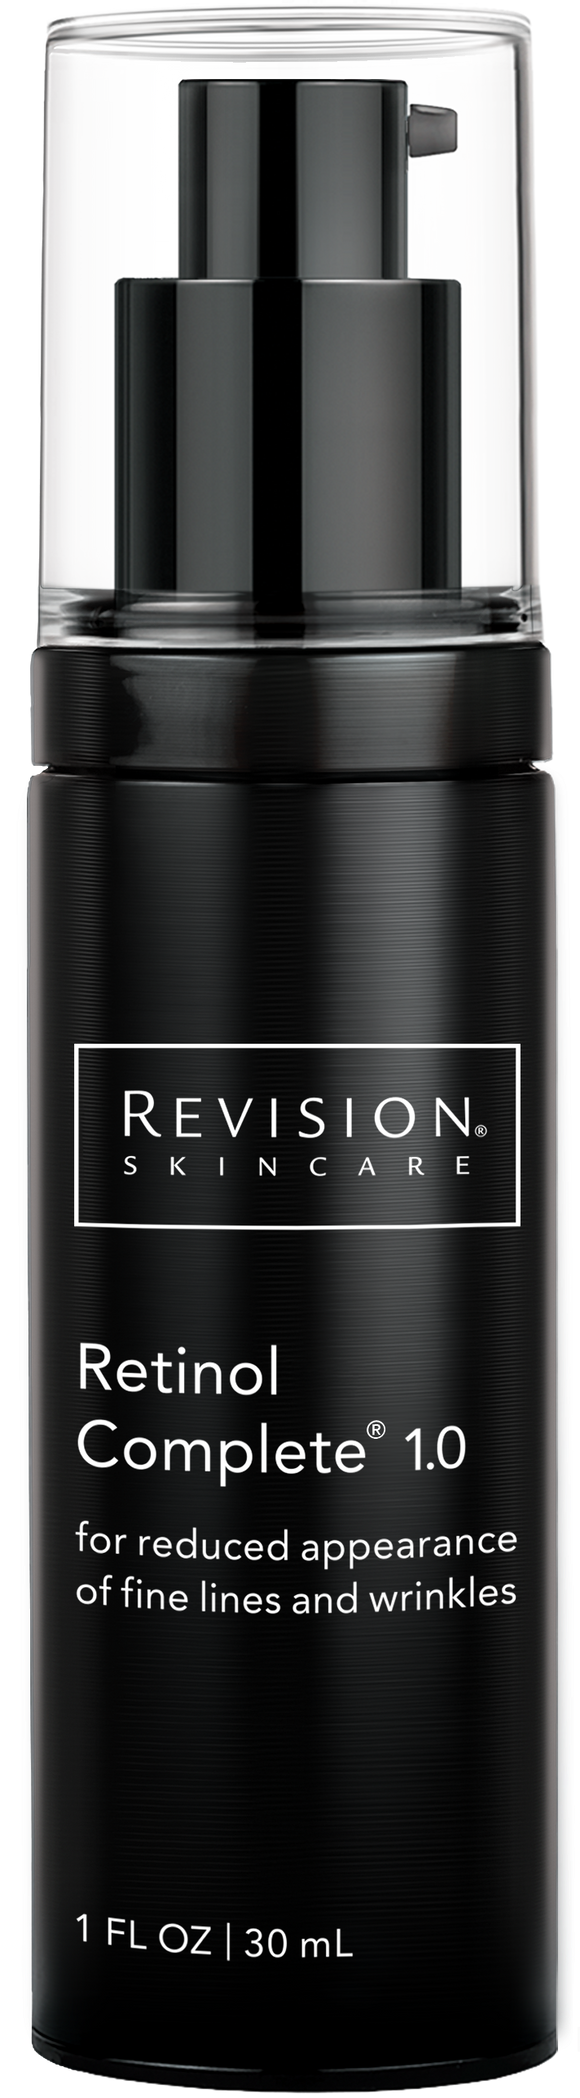 Revision Skincare Retinol Complete 1.0